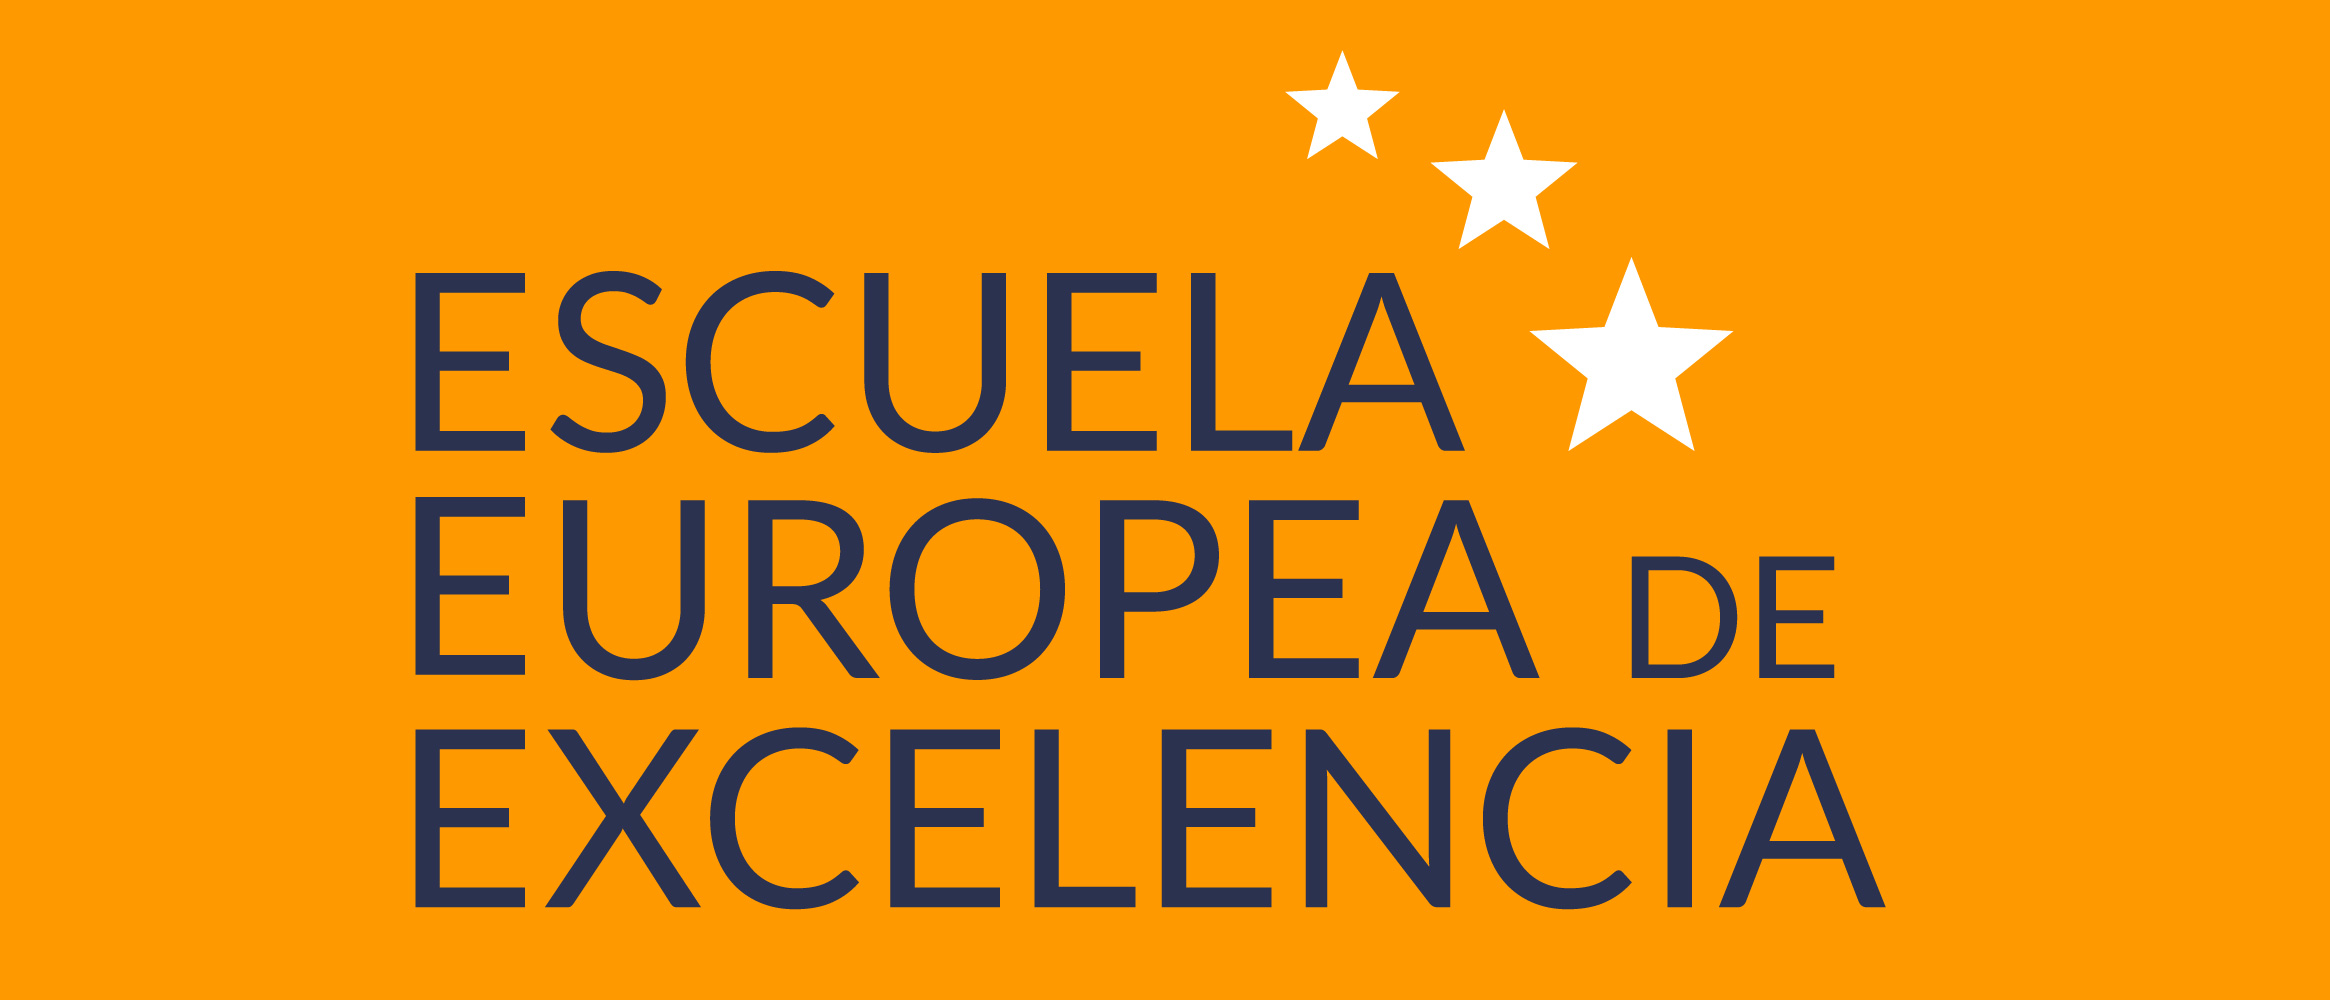 Escuela Europea de Excelencia 